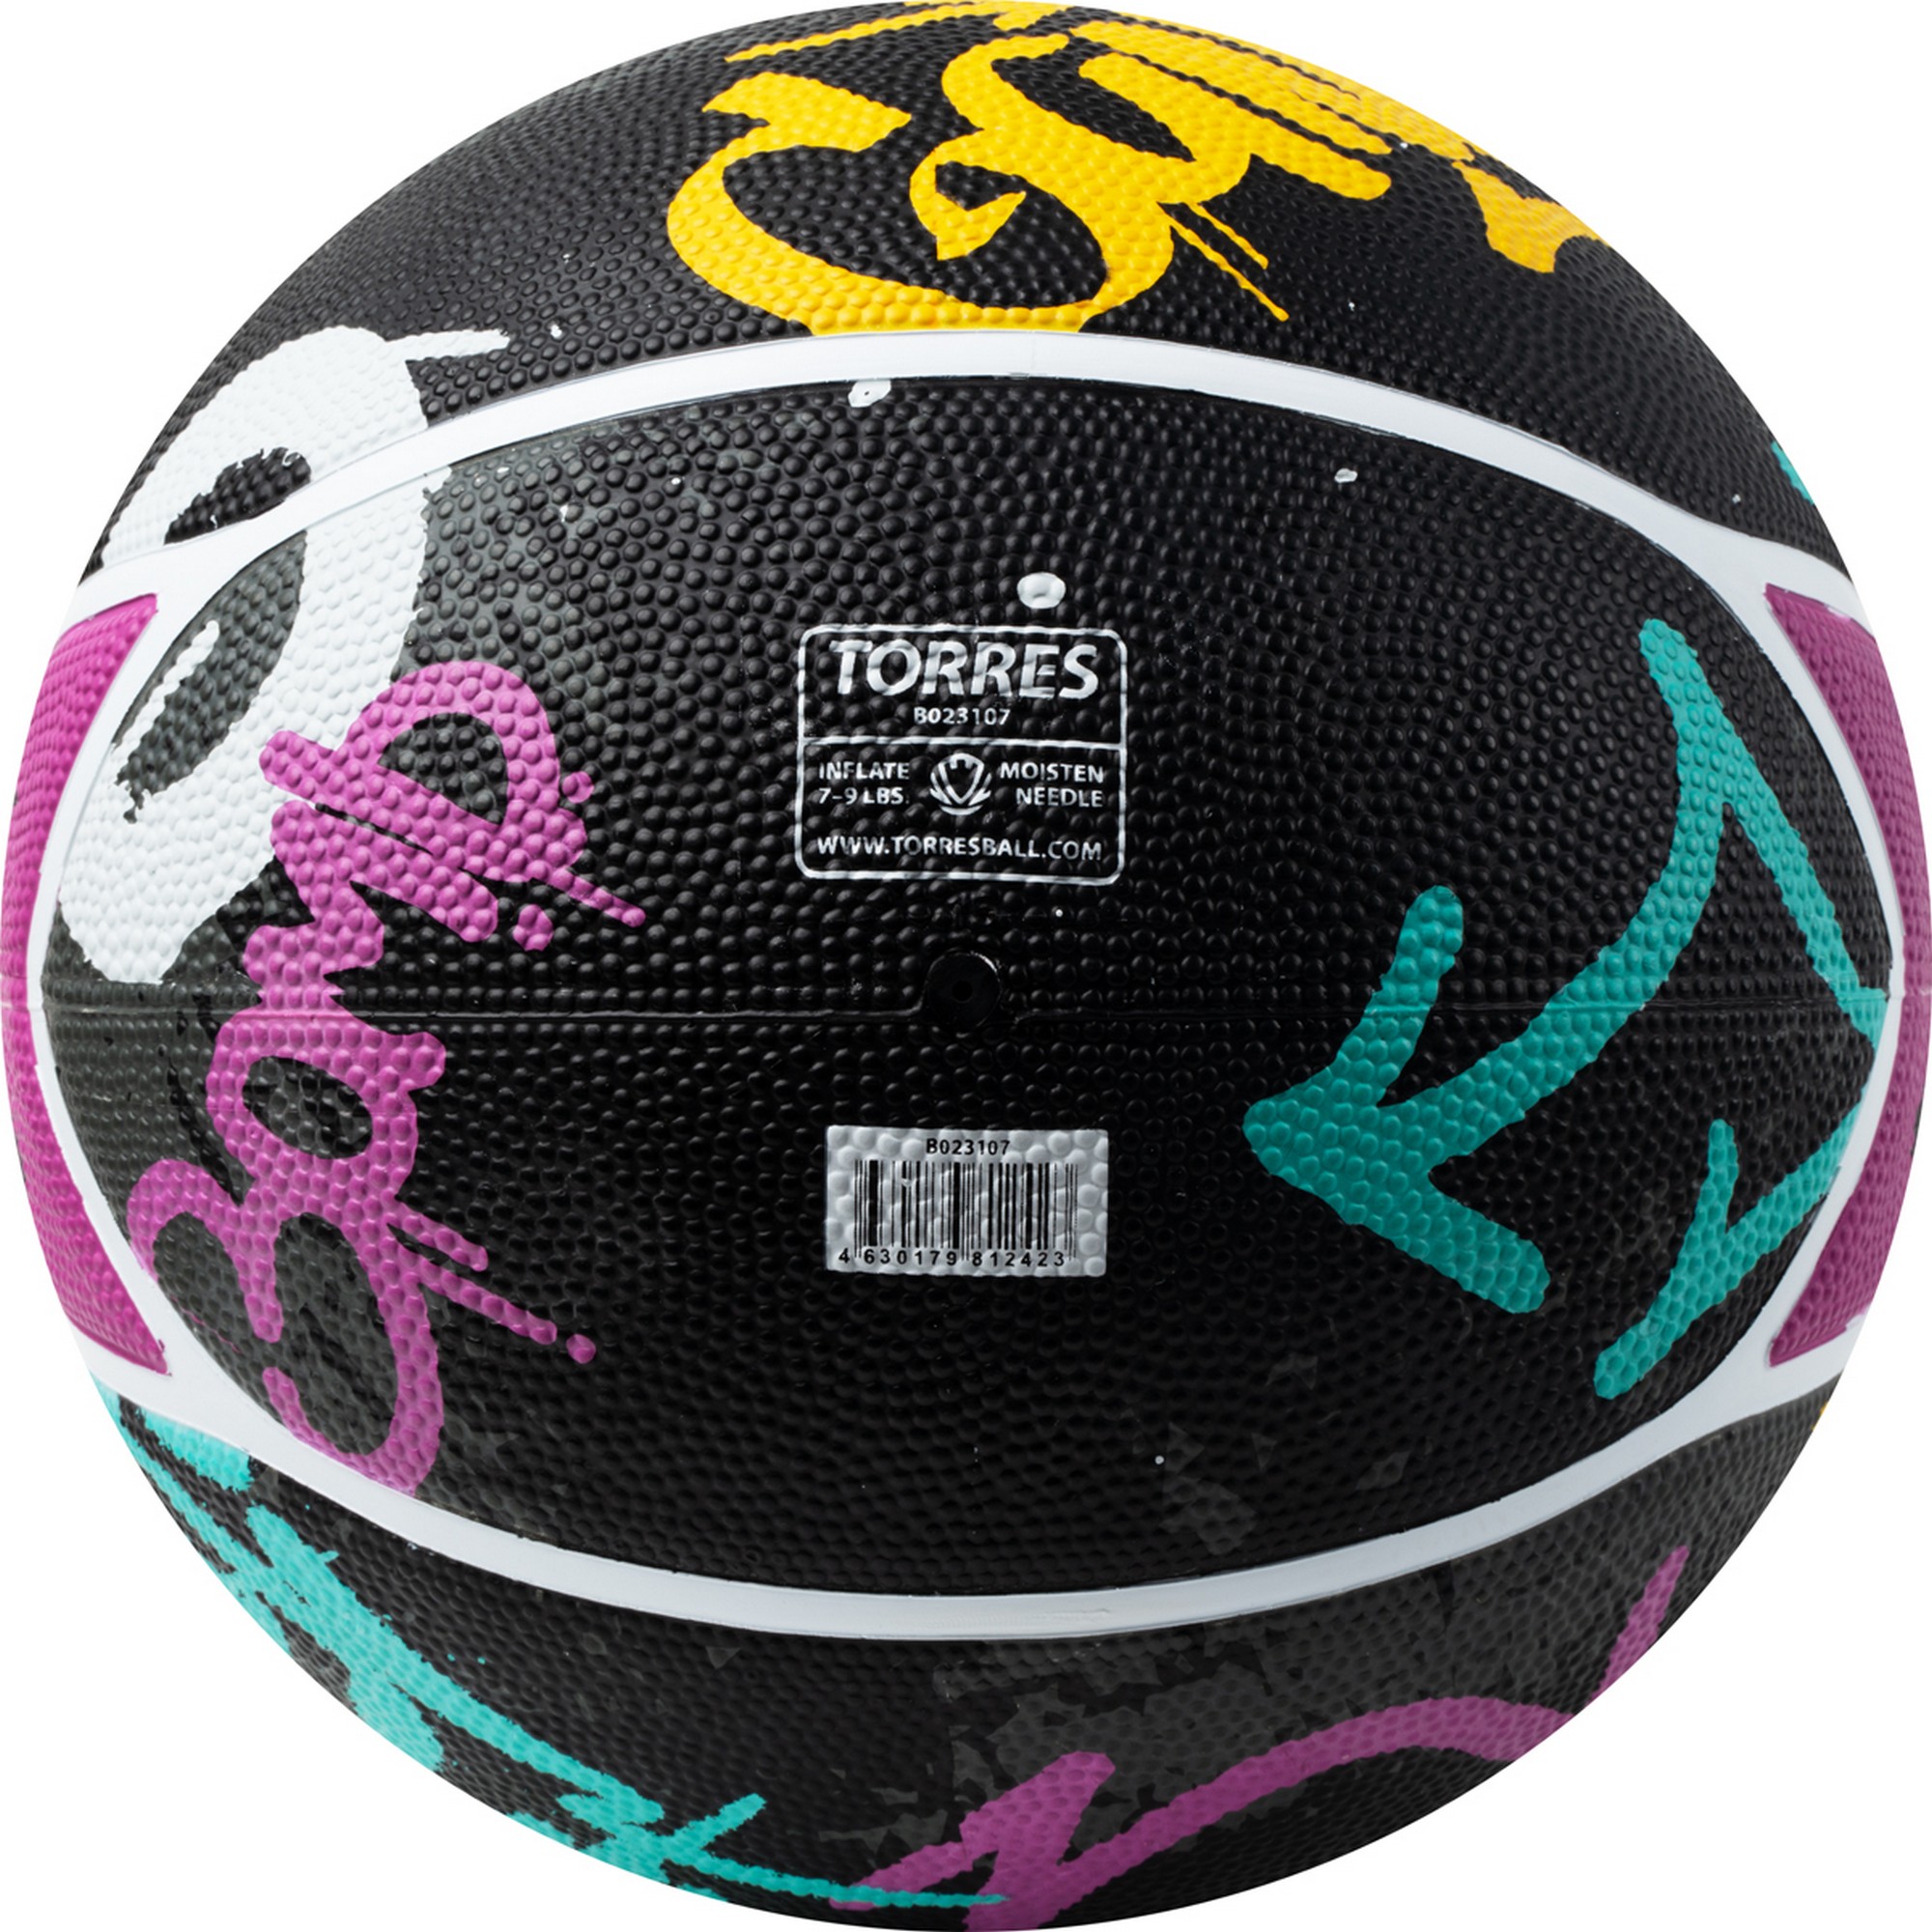 Мяч баскетбольный Torres Street B023107 р.7 2000_2000